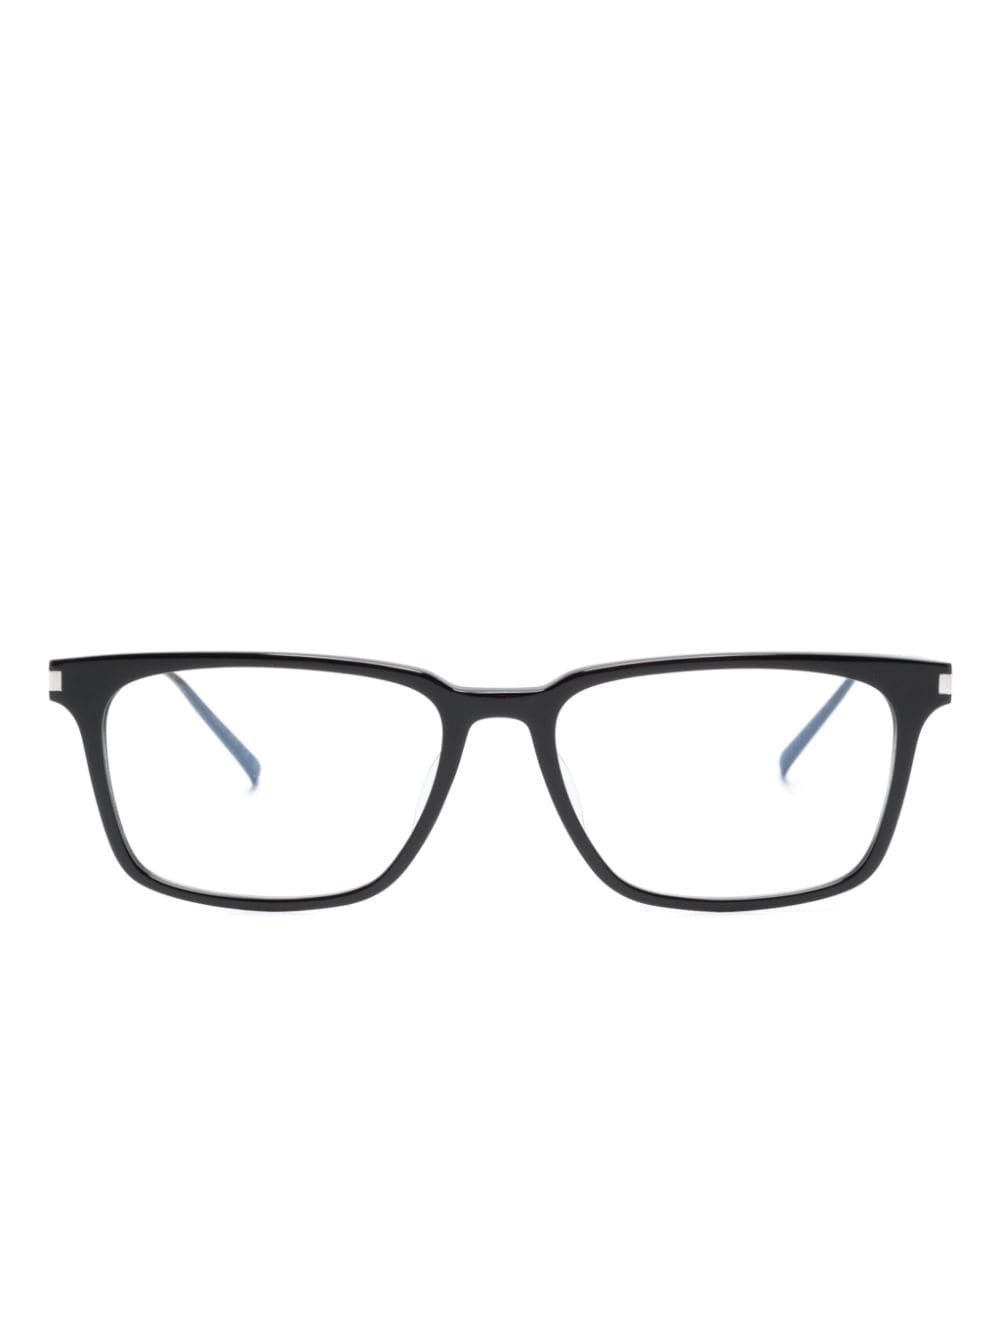 Saint Laurent Eyewear Brille mit eckigem Gestell - Schwarz von Saint Laurent Eyewear